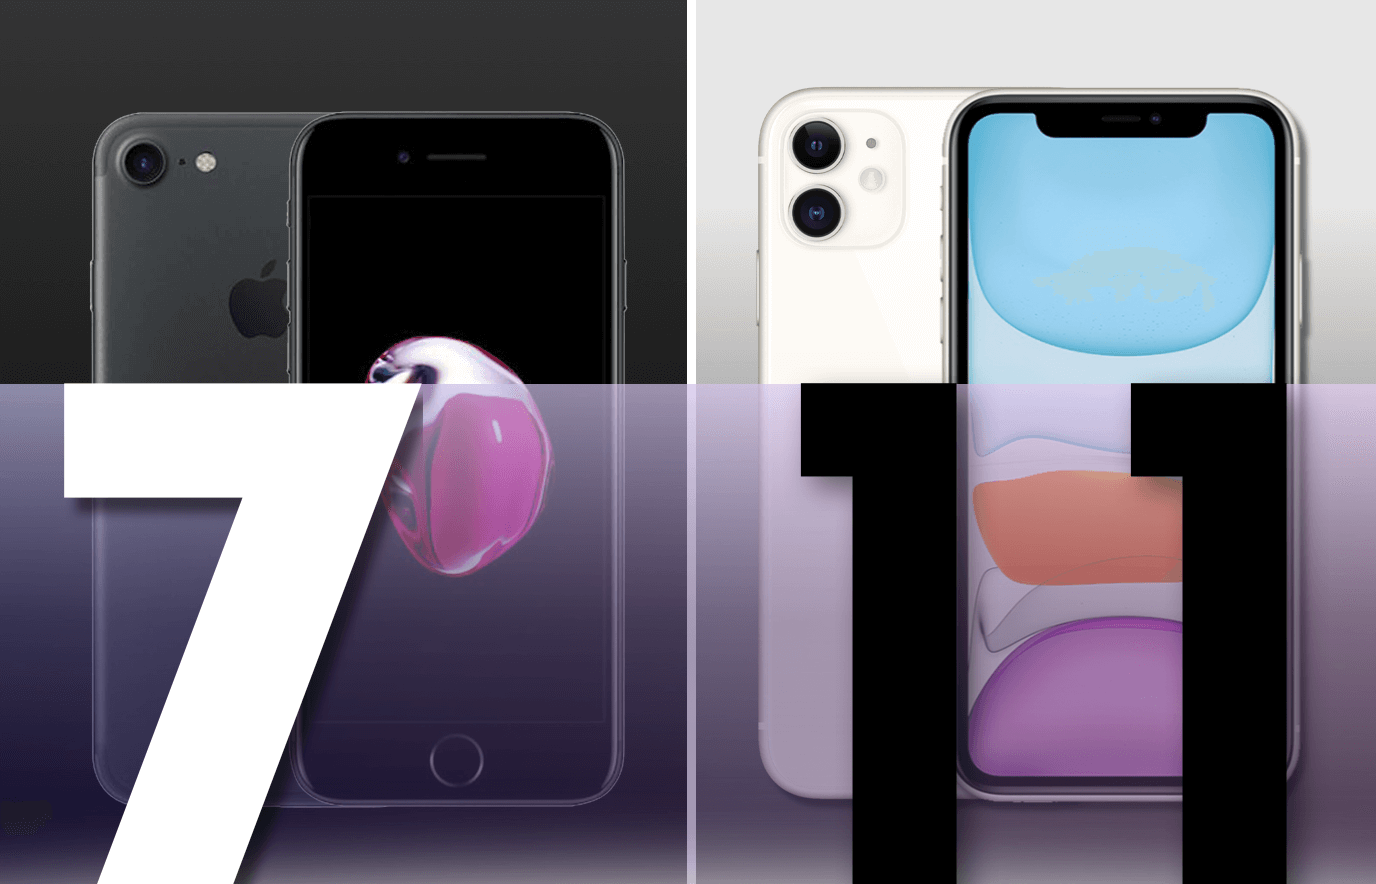 Wederzijds Beangstigend verkopen iphone 7 vs iphone 11, wat is de beste keuze?